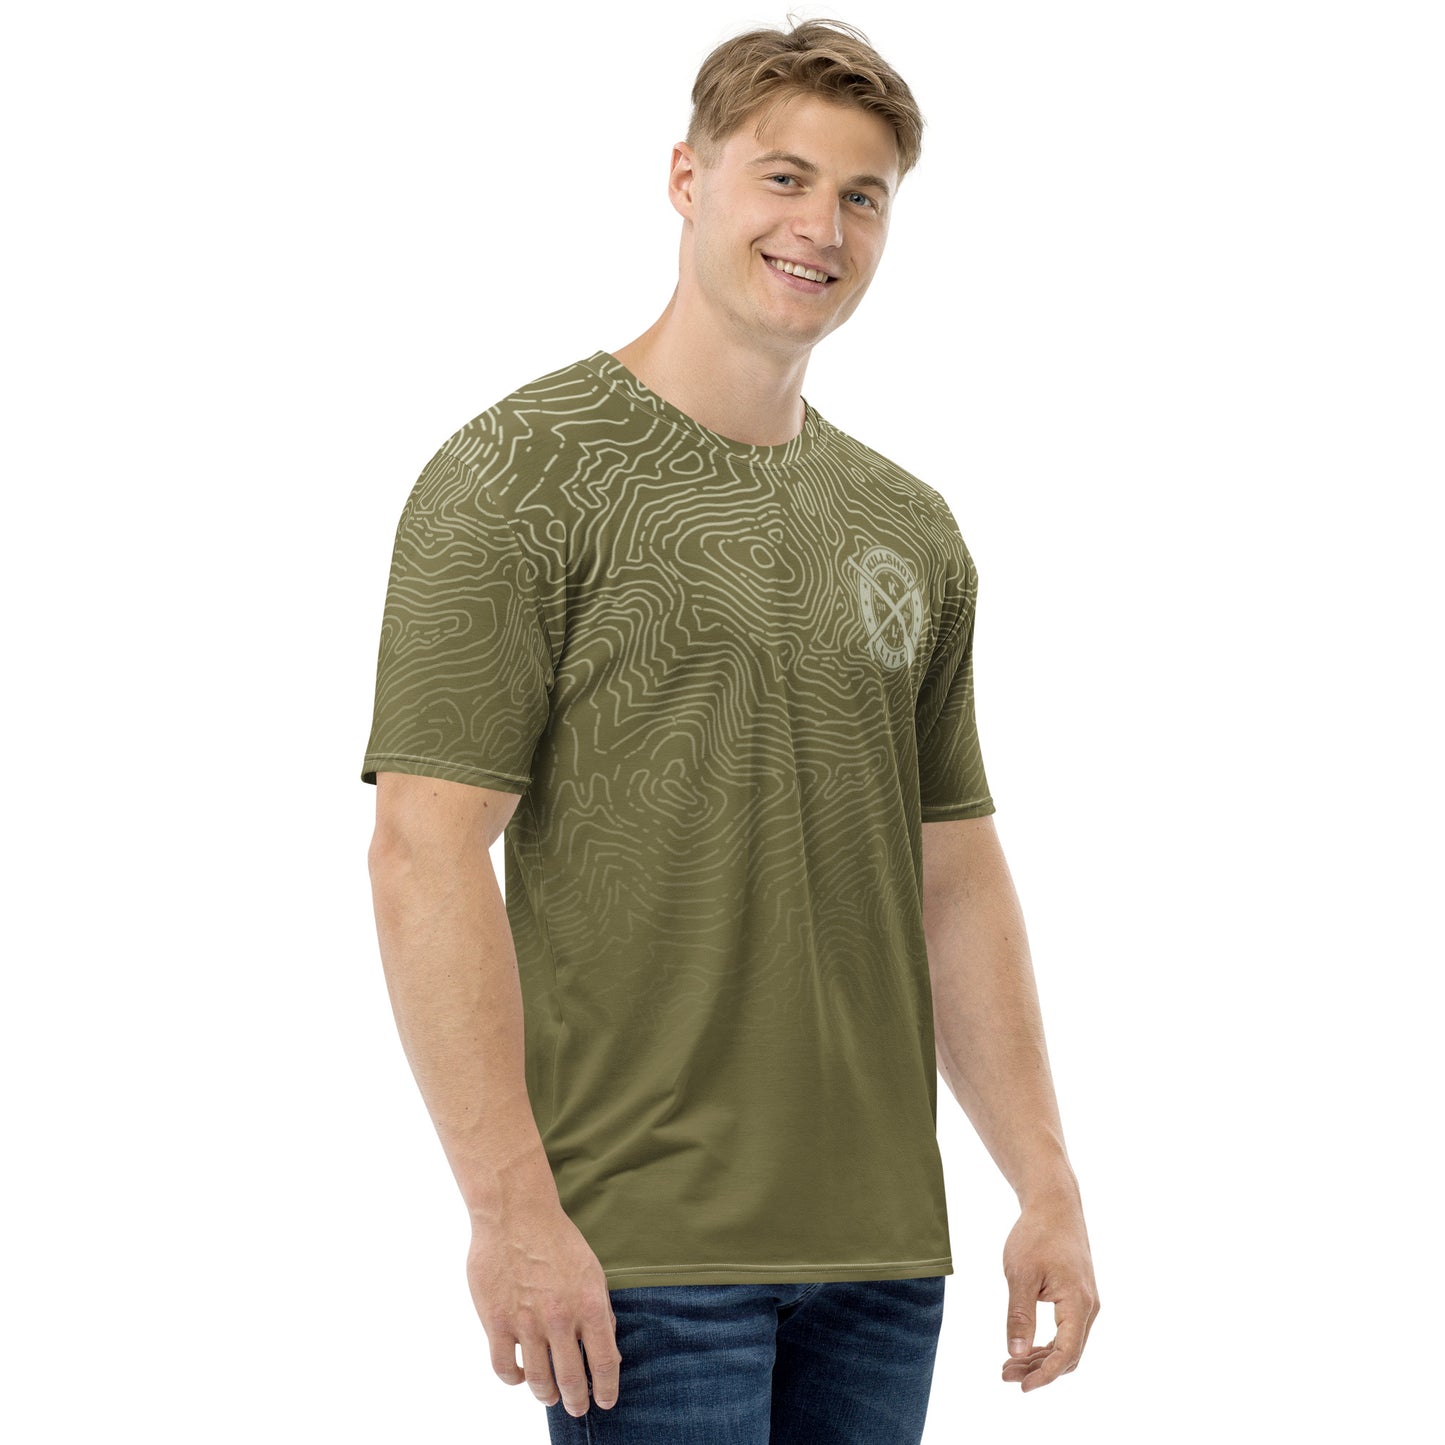 Men's Desert Tan T-shirt